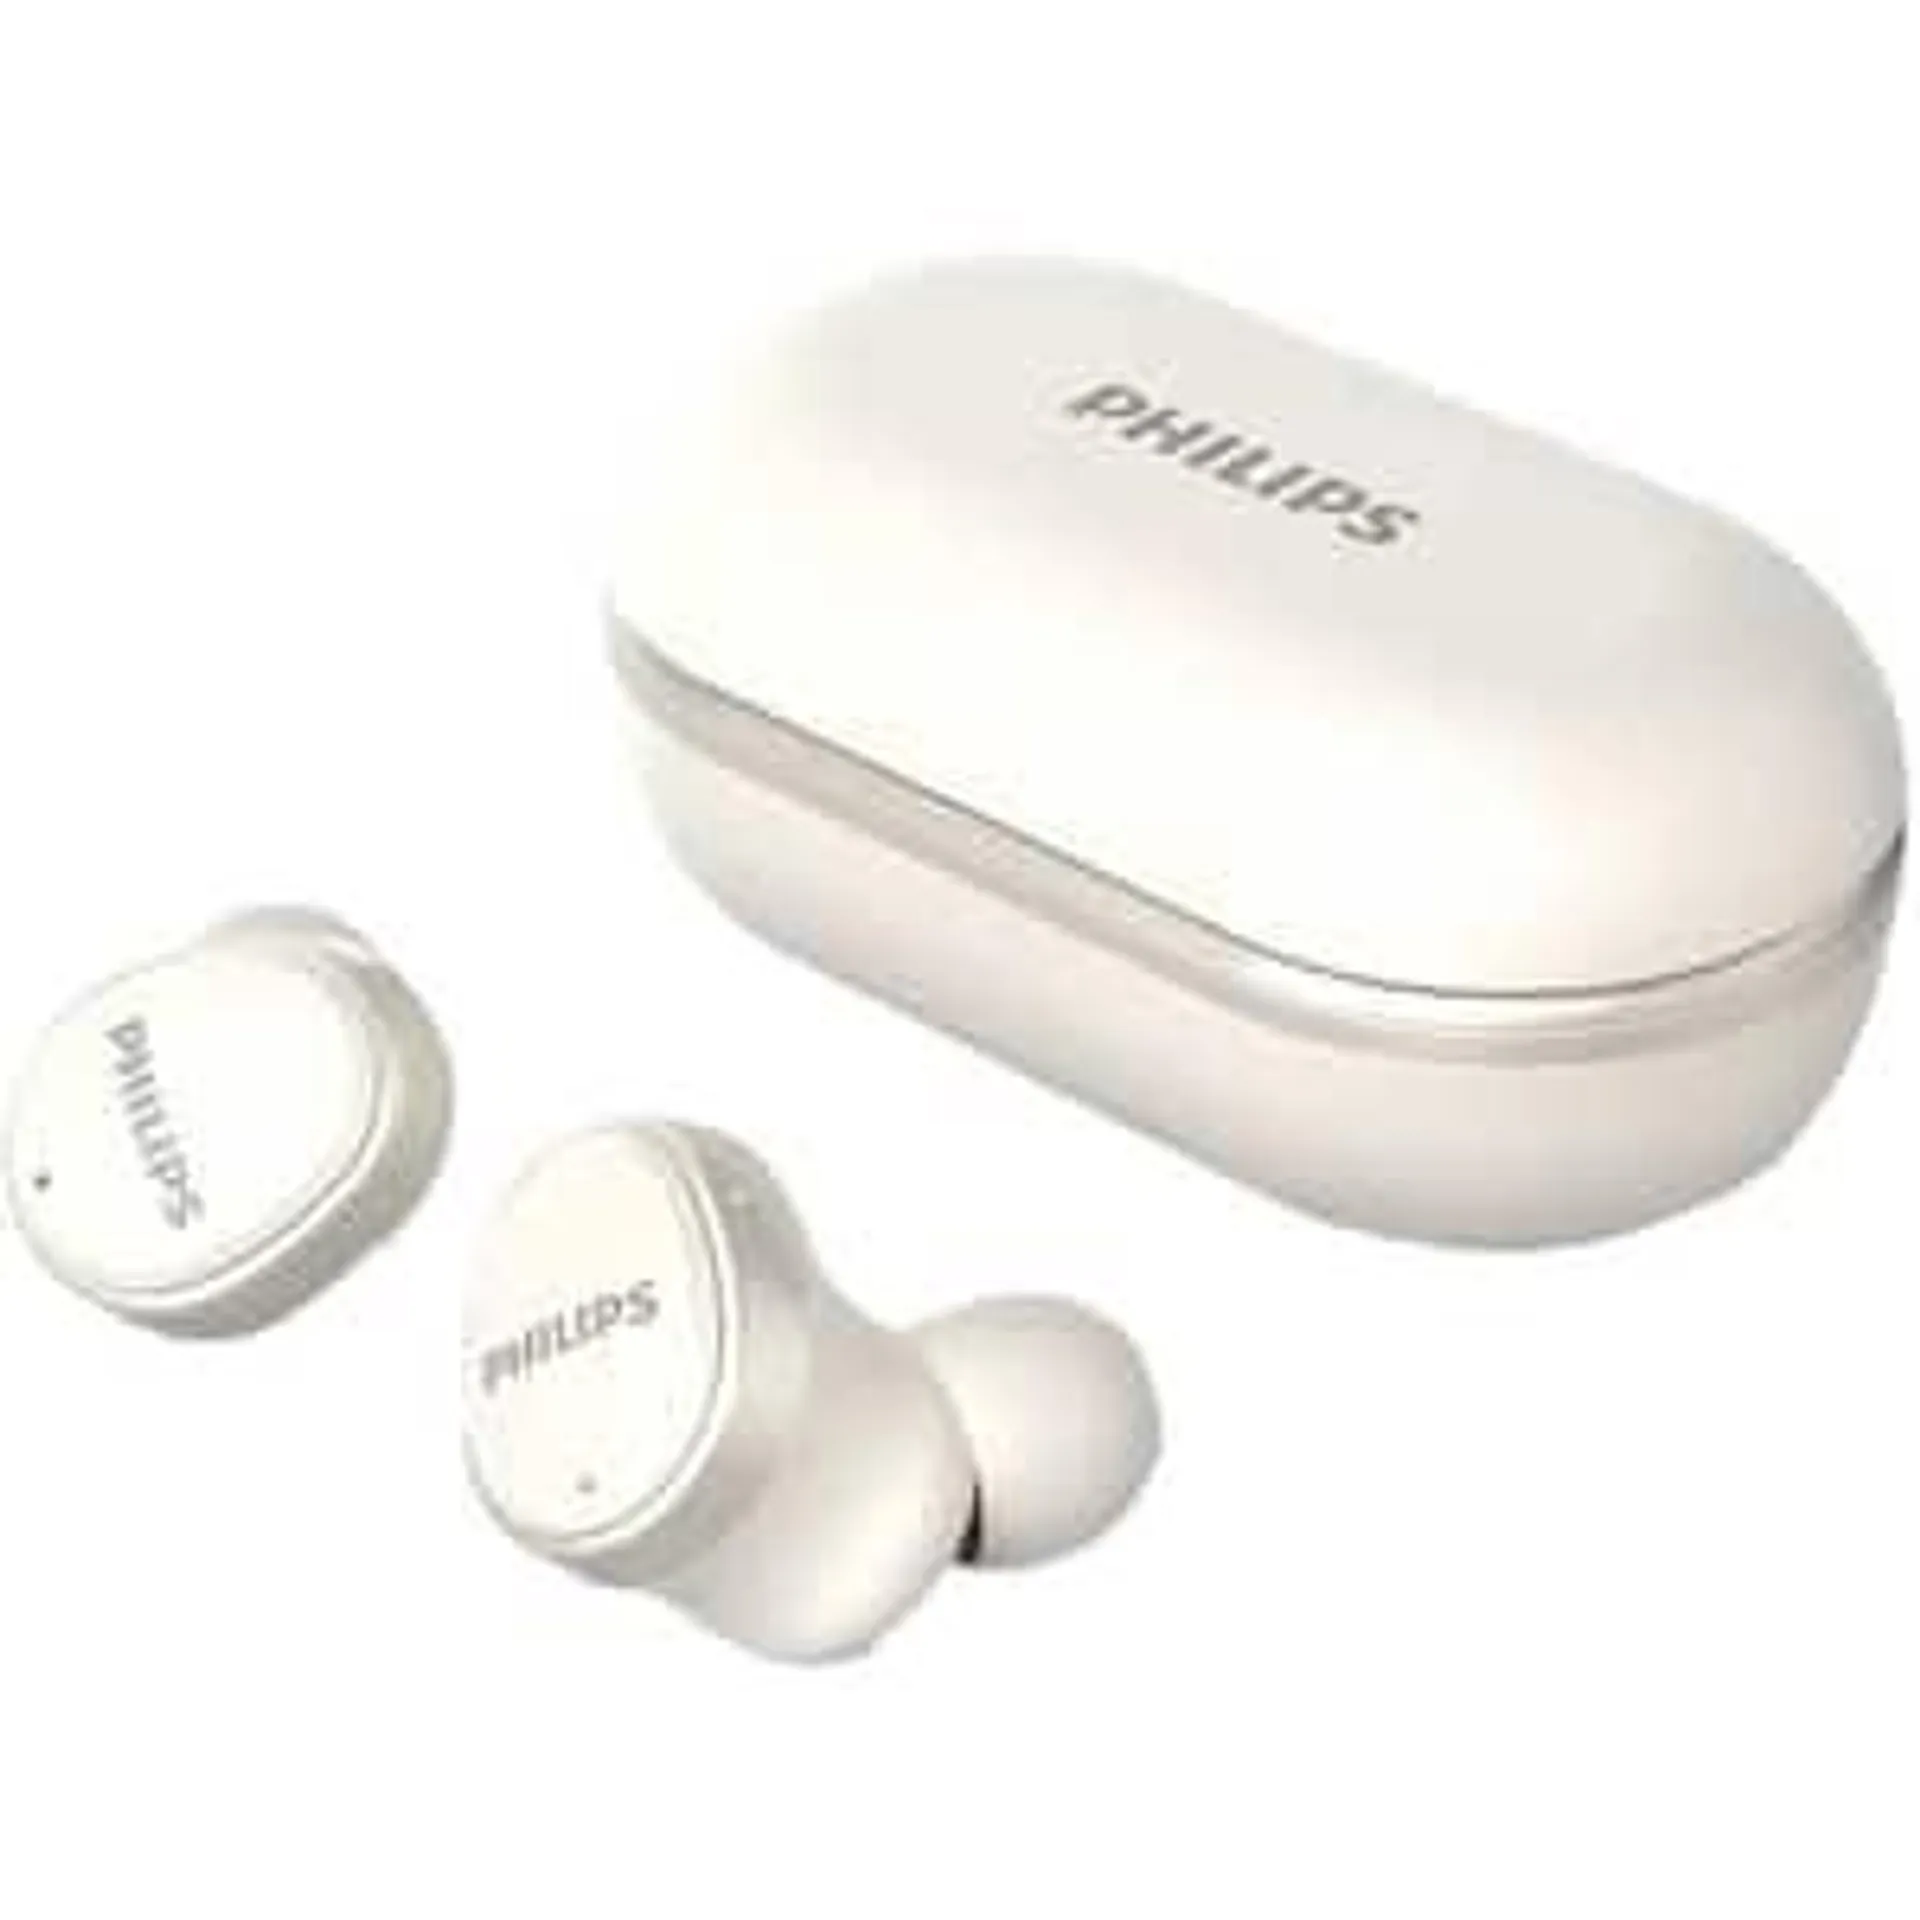 Casti PHILIPS TAT4556WT/00, True Wireless, Bluetooth, In-Ear, Microfon, Noise Cancelling, alb